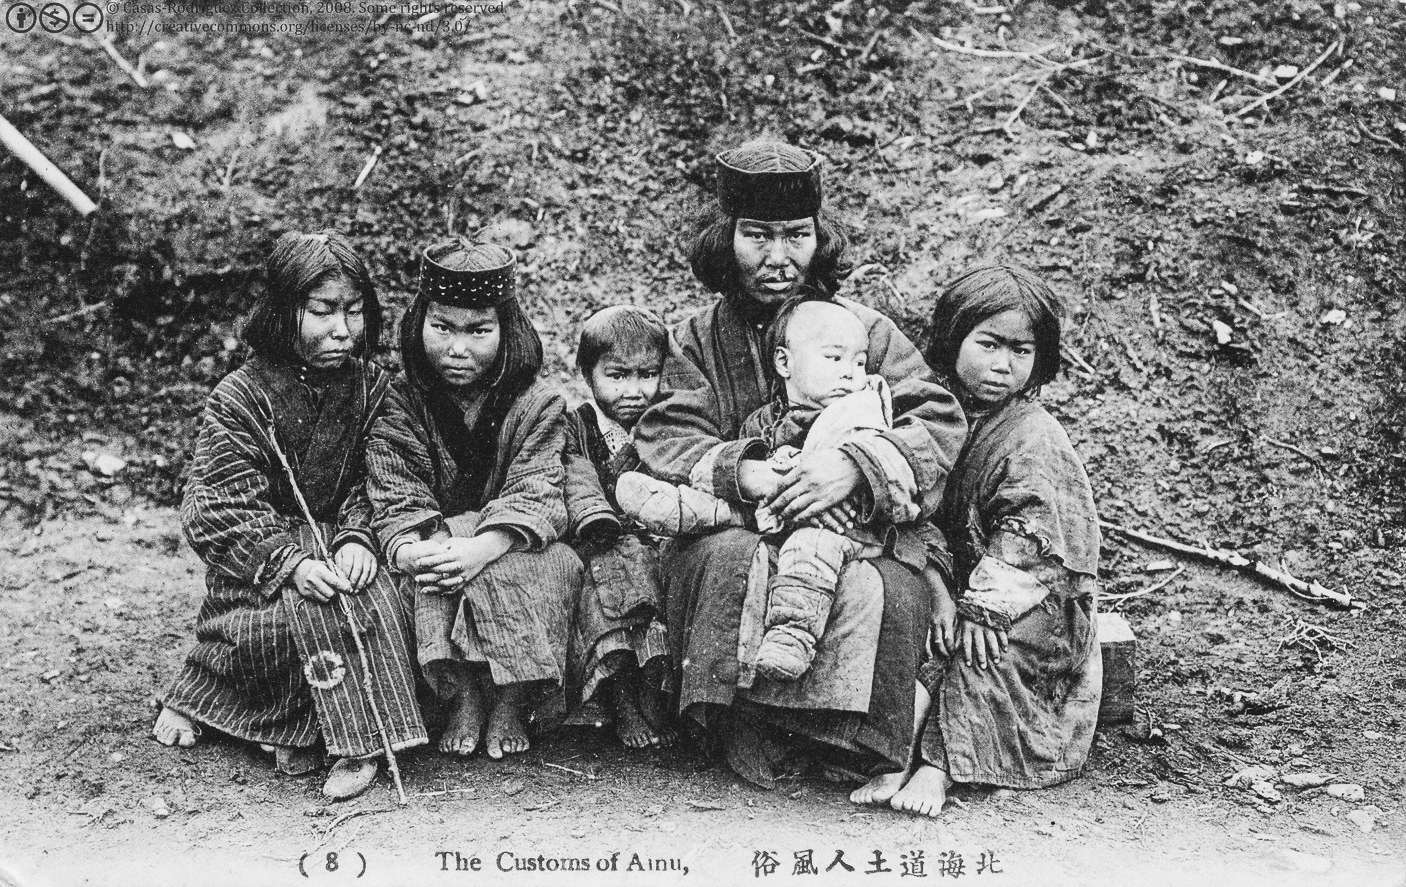 Ainu (også kaldet Ezo i historiske tekster) er en etnisk gruppe hjemmehørende i Hokkaidō, Kuriløerne og store dele af Sakhalin. Der er højst sandsynligt over 150,000 Ainu i dag; men det nøjagtige tal er ikke kendt, da mange Ainu skjuler deres oprindelse på grund af raceproblemer i Japan